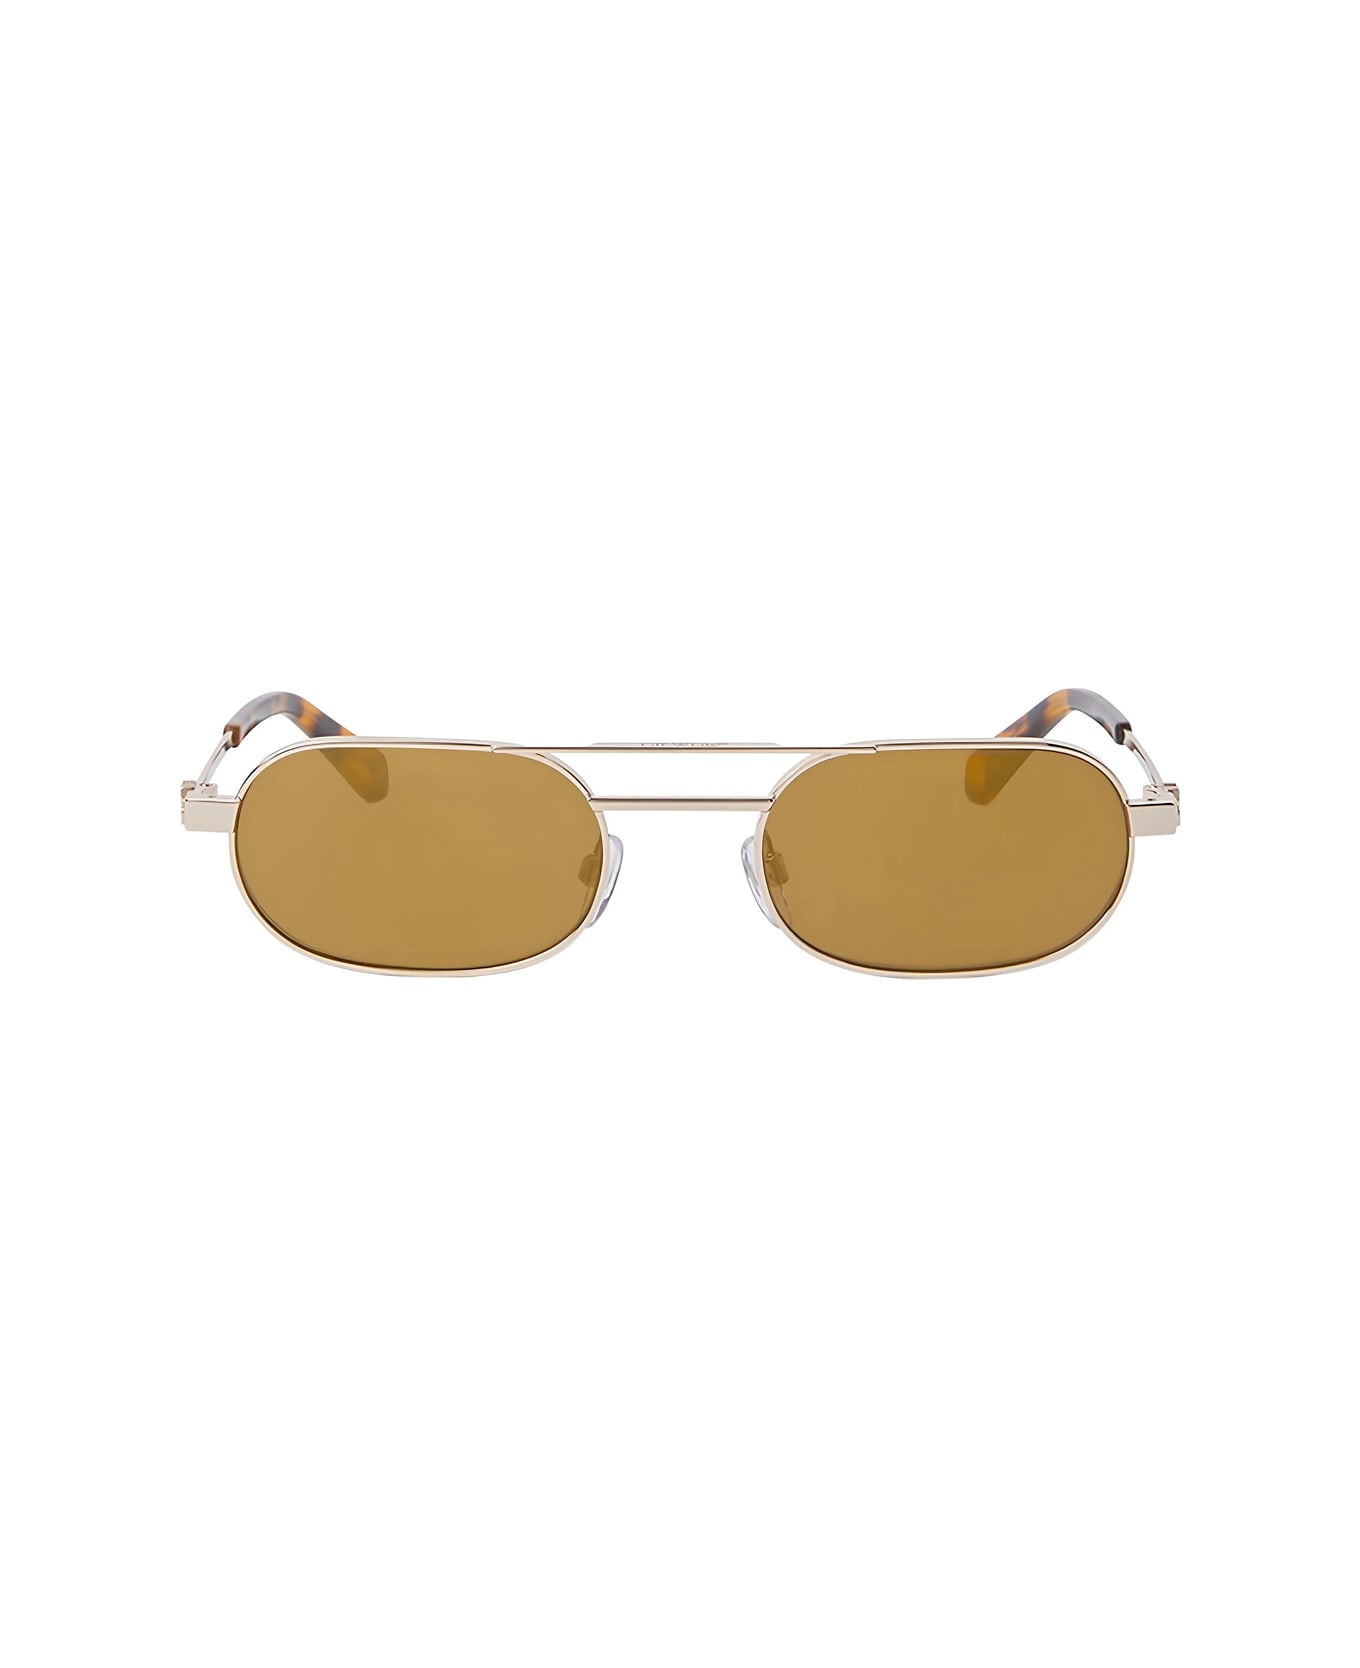 Off-White Oeri123 Vaiden 7676 Gold Sunglasses - Oro サングラス